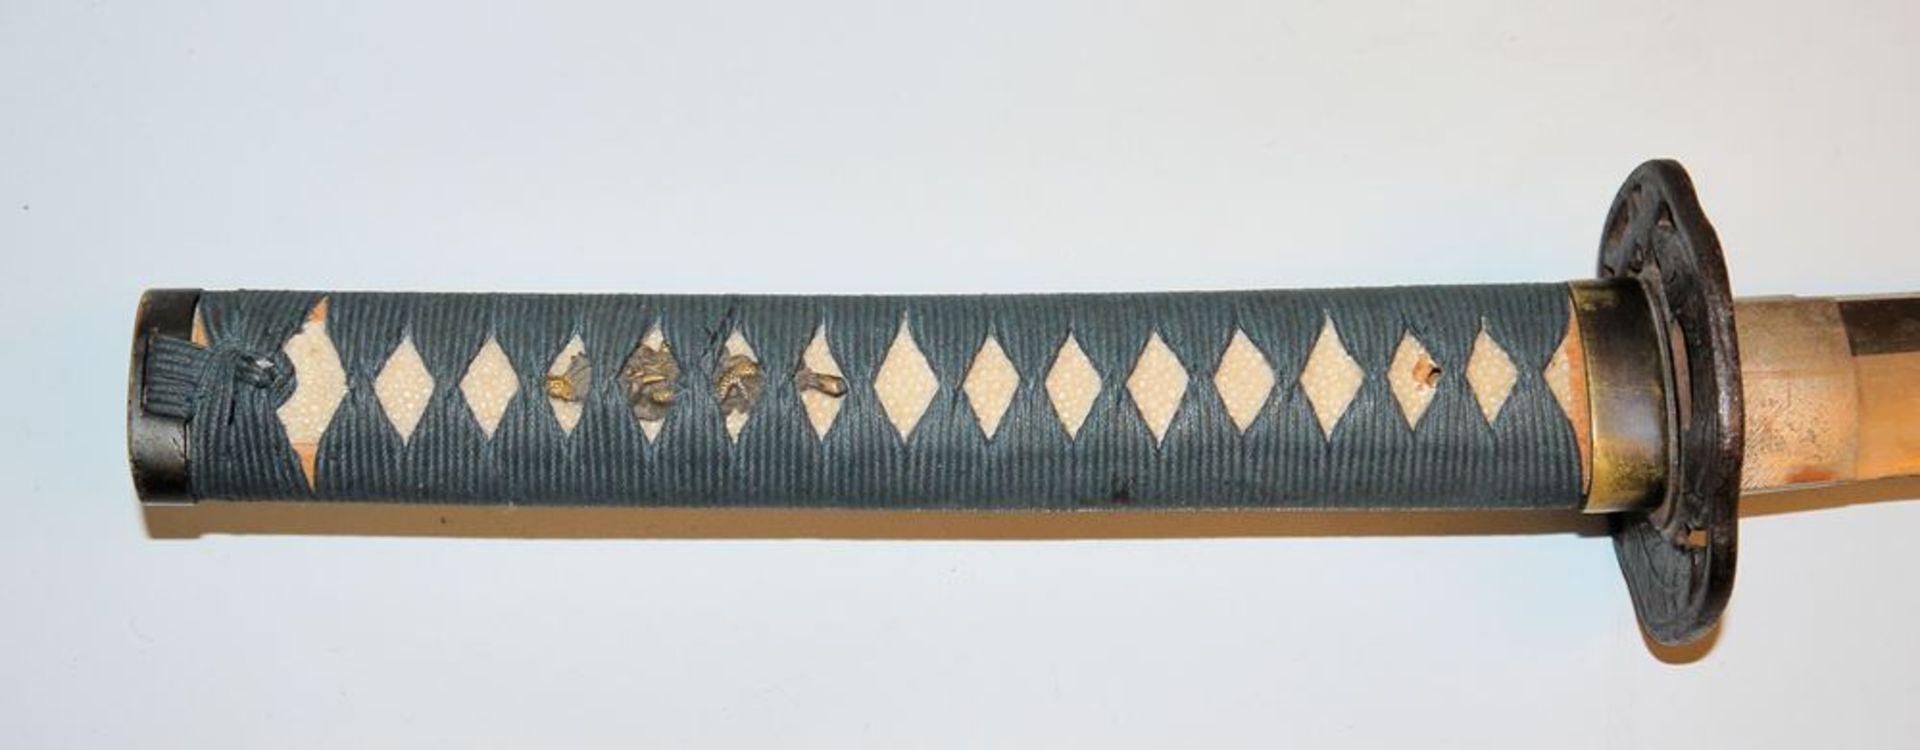 Katana, japanisches Schwert der Edo/Meiji-Zeit - Bild 6 aus 8